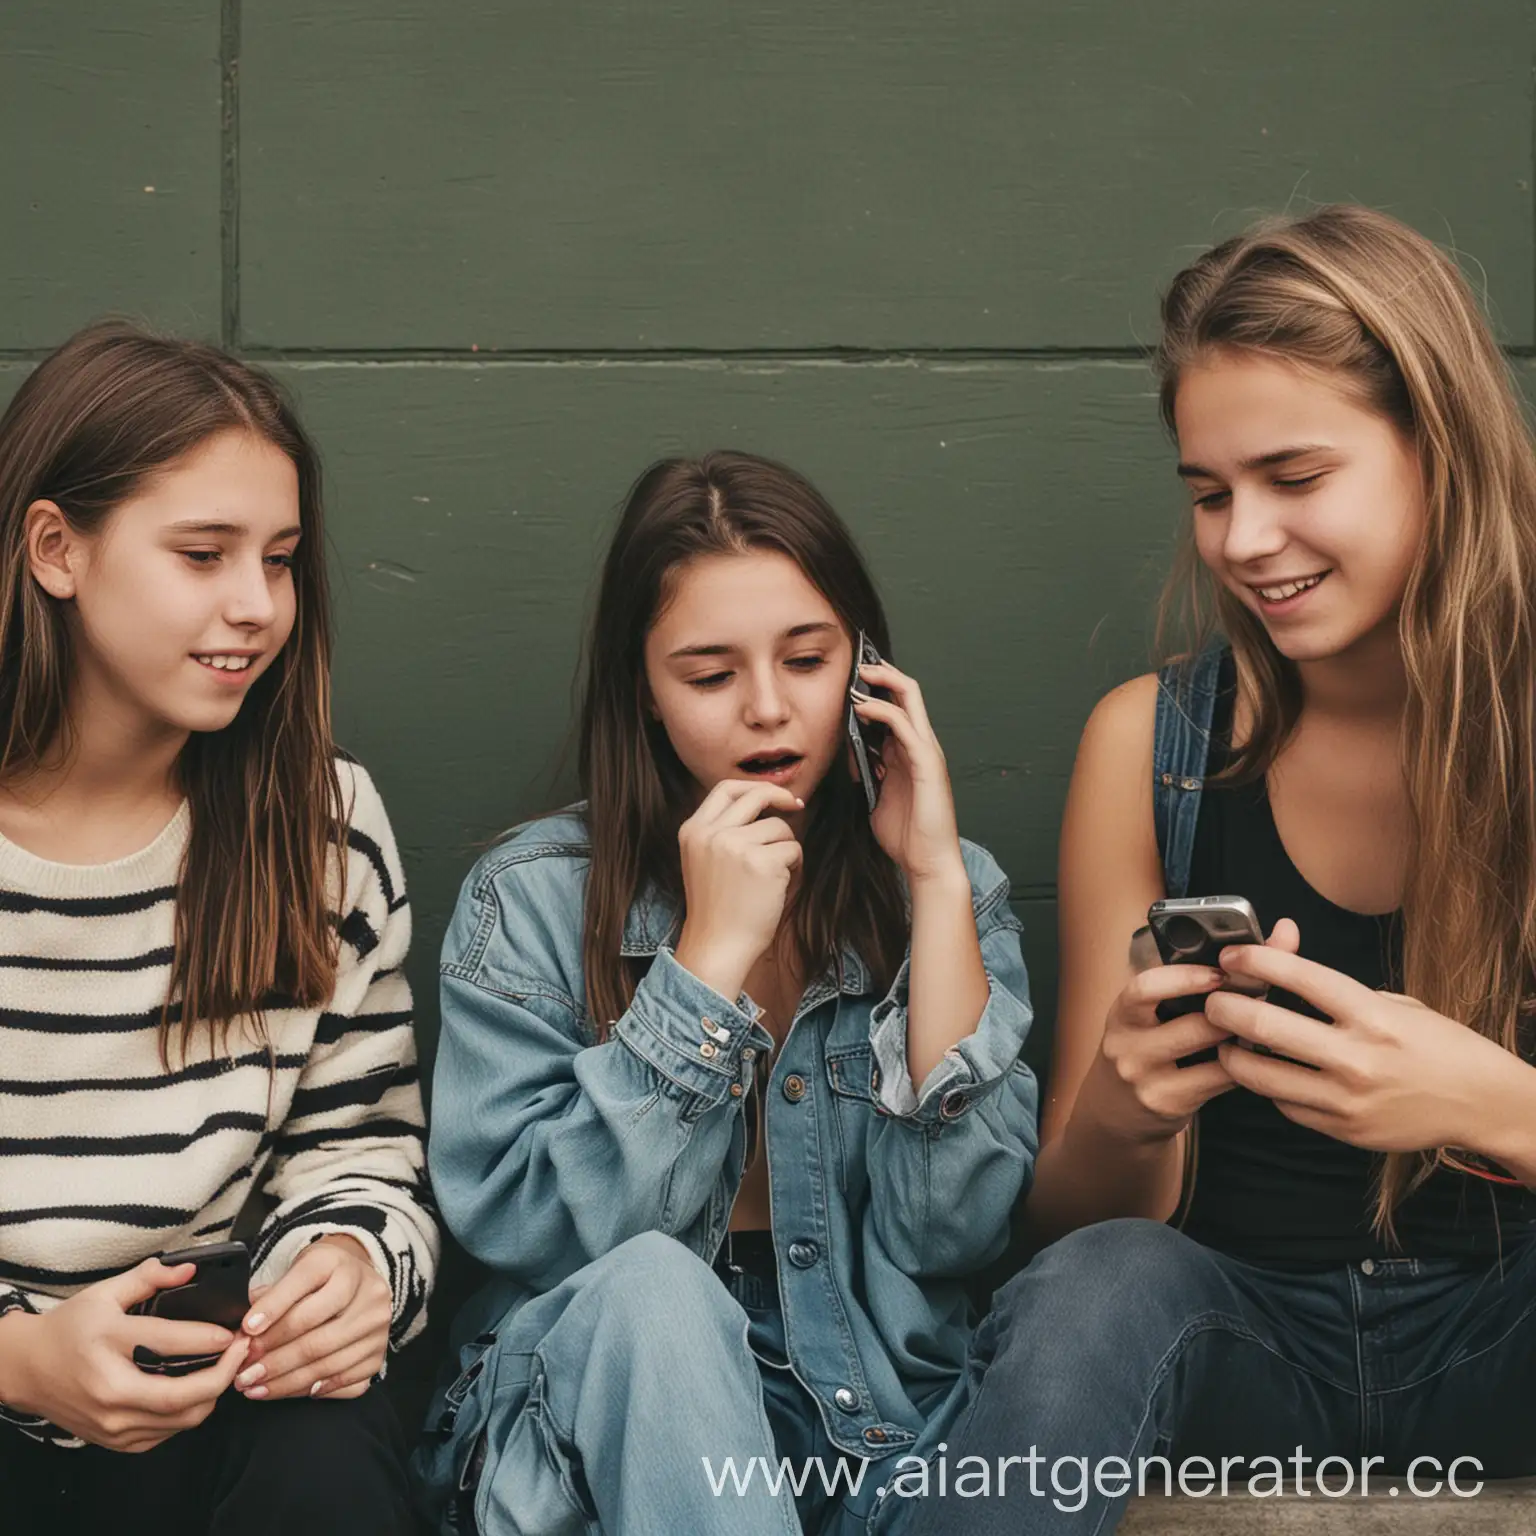 Teenagers-Engrossed-in-Phone-Conversations